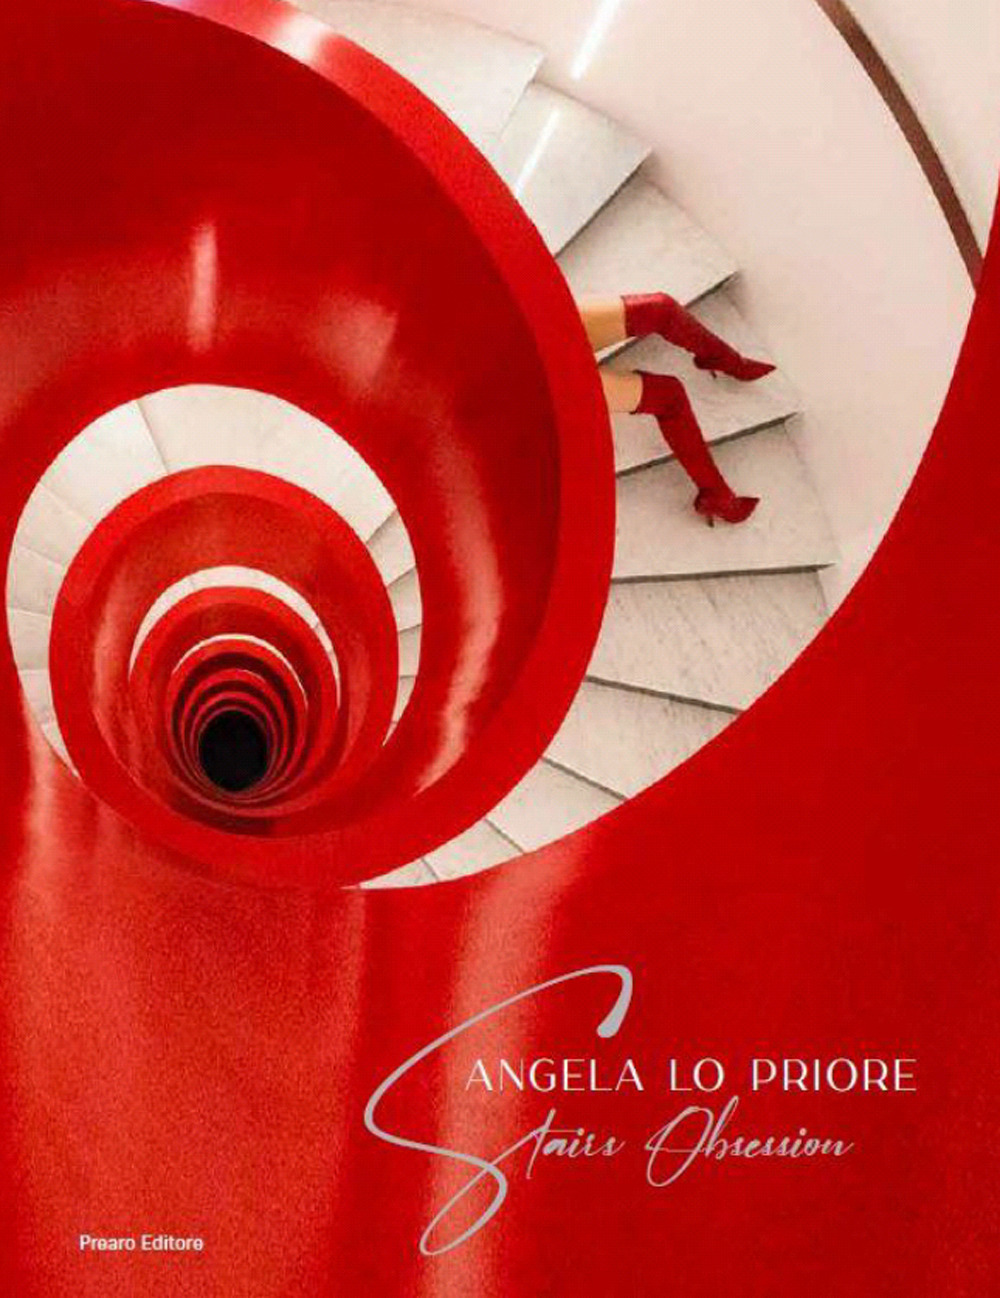 Libri Lo Priore Angela - Stairs Obsession. Ediz. Italiana E Inglese NUOVO SIGILLATO, EDIZIONE DEL 24/07/2021 SUBITO DISPONIBILE